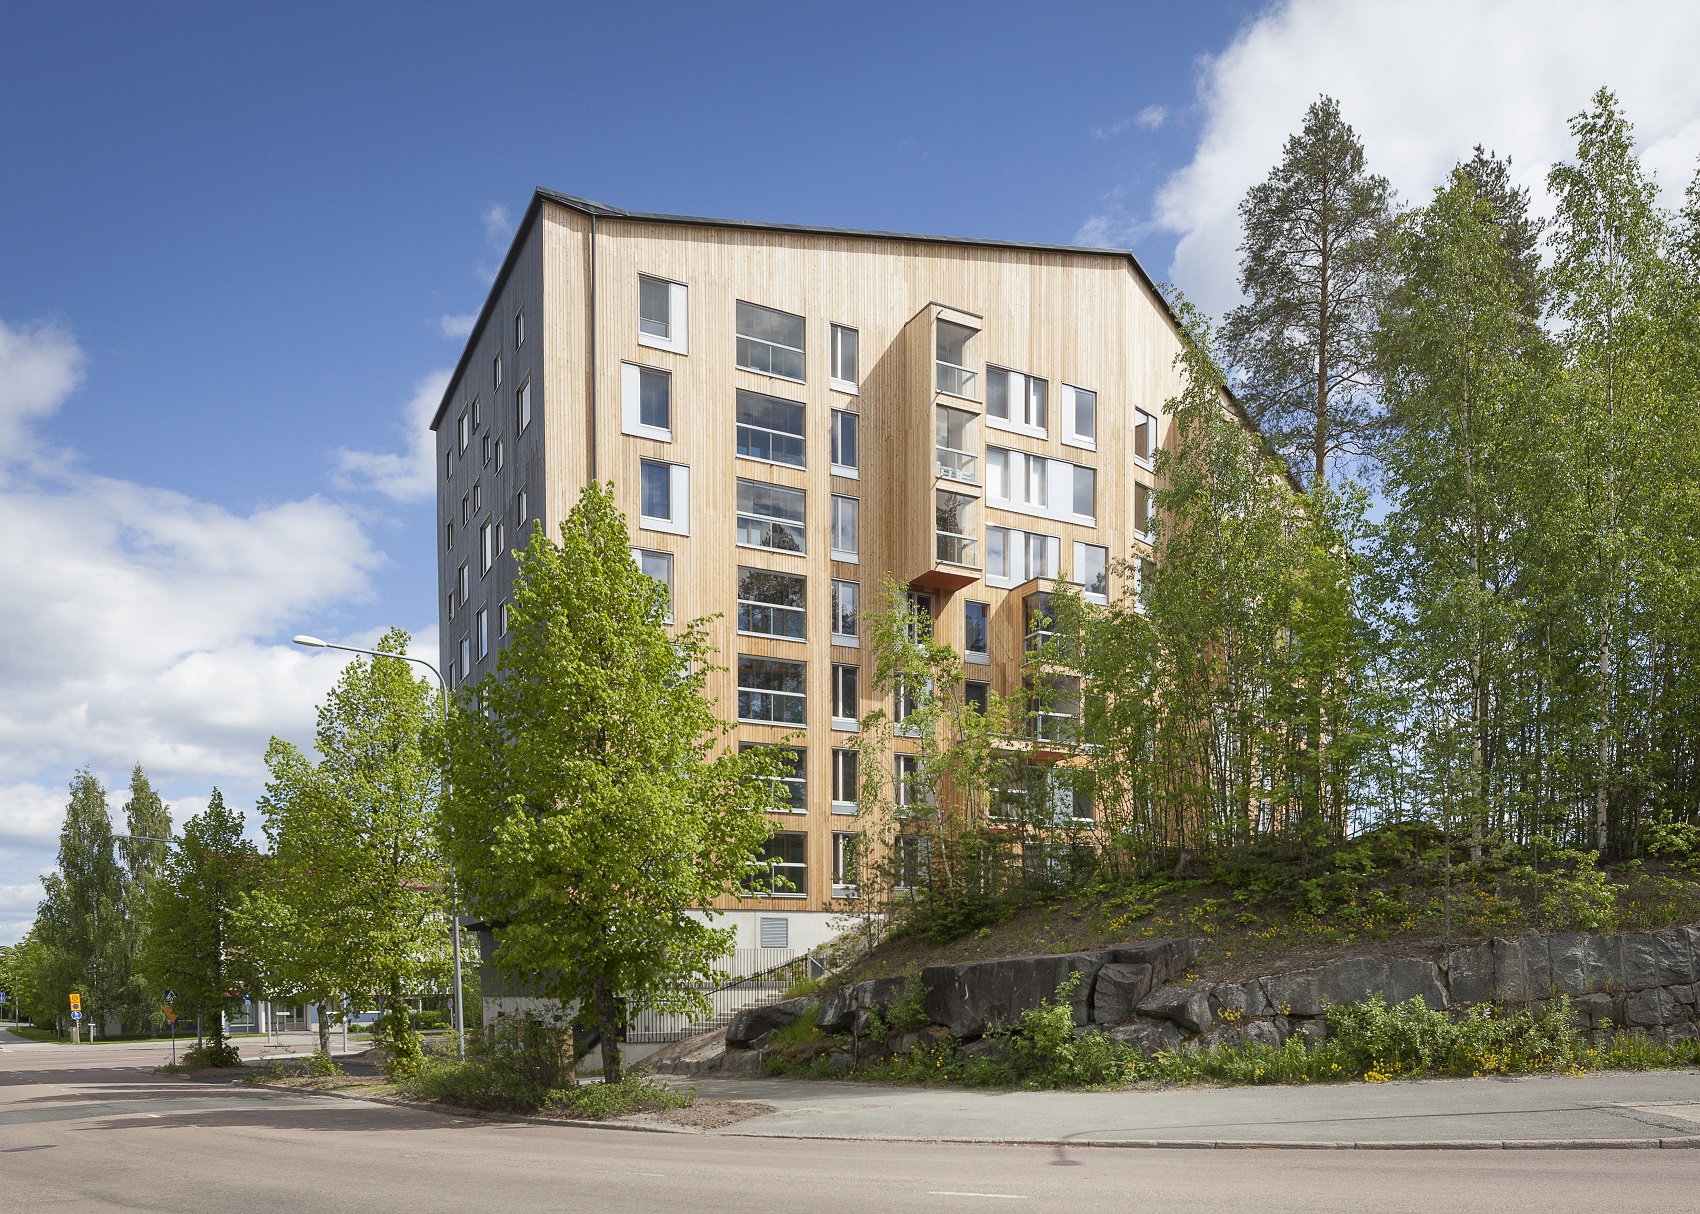 Puukuokka Housing Block, Jyväskylä 2014, OOPEAA Office for Peripheral Architecture. Kuva: Mikko Auerniitty